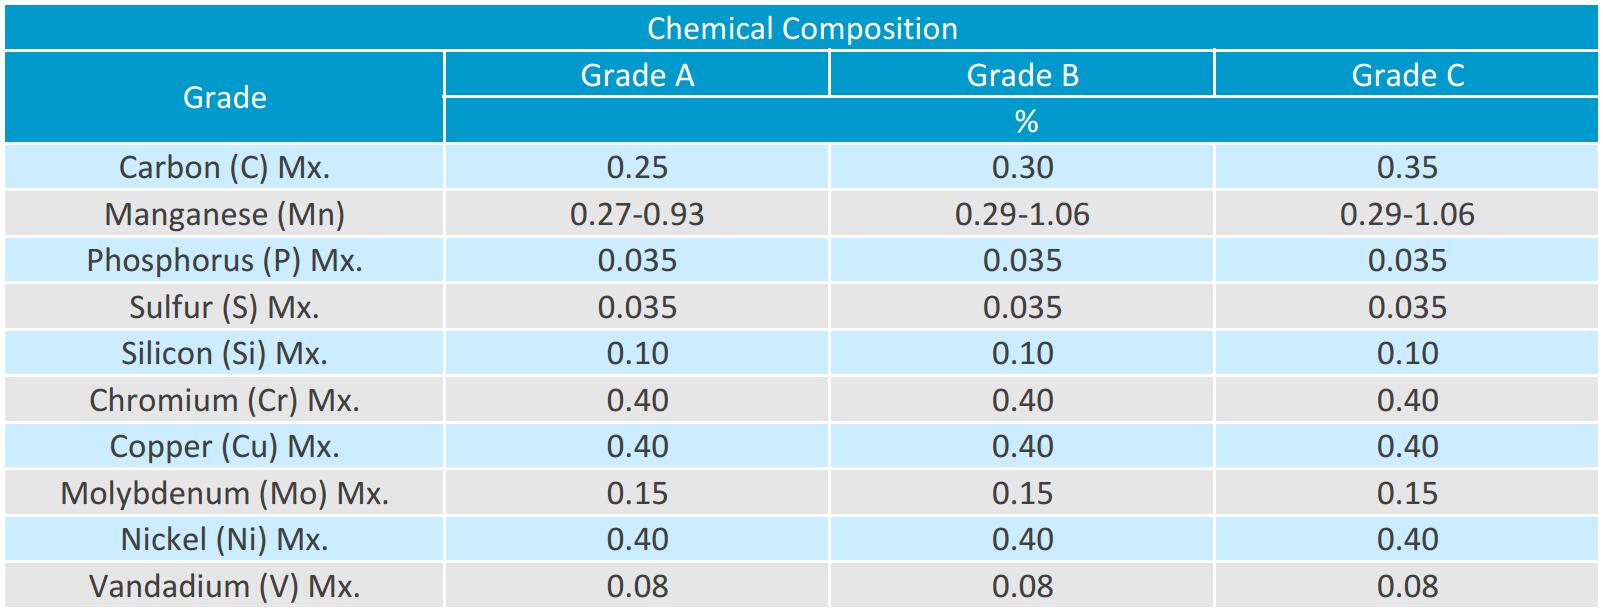 a106 composición química b ASTM